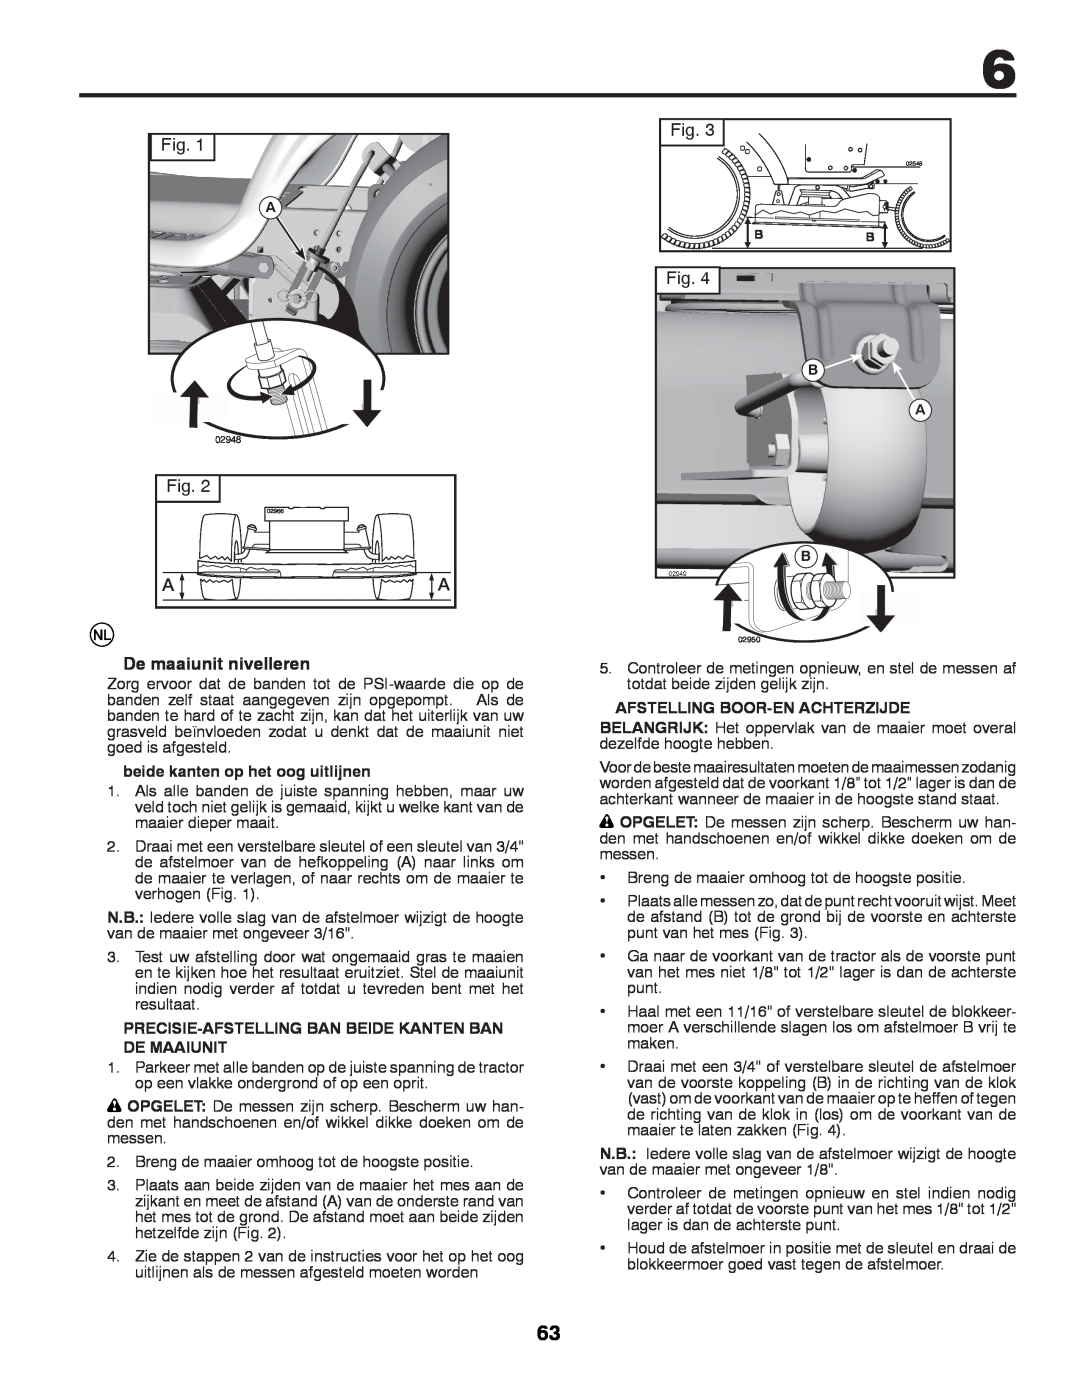 McCulloch 532 43 29-74 manual De maaiunit nivelleren, beide kanten op het oog uitlijnen, Afstelling Boor-En Achterzijde 